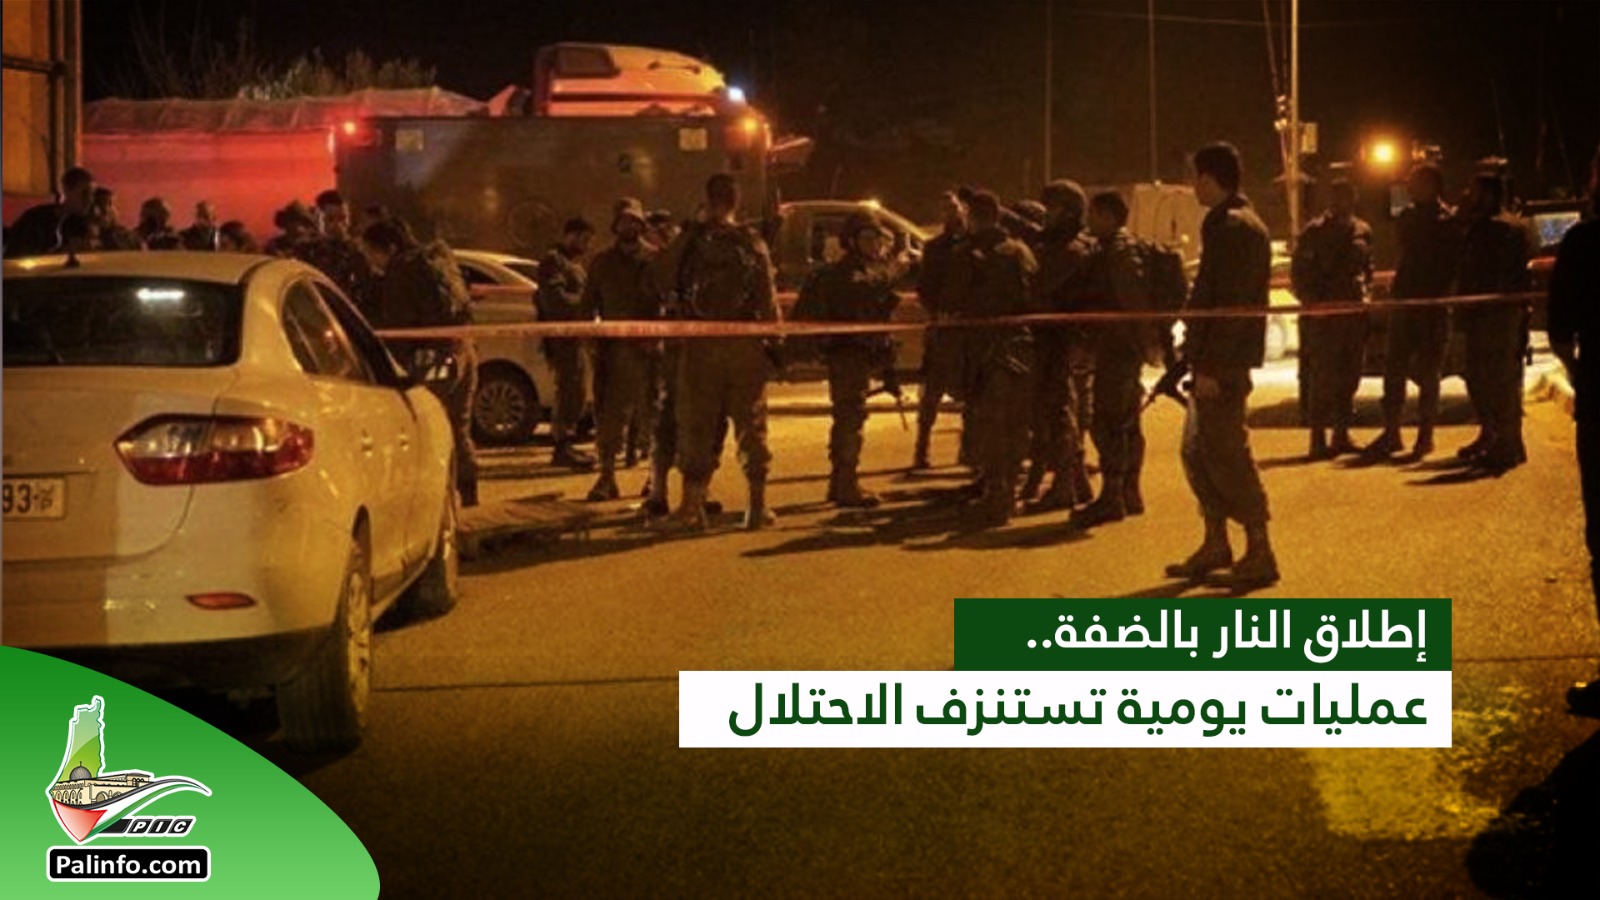 مقاومون يطلقون النار تجاه موقع لجيش الاحتلال غرب نابلس